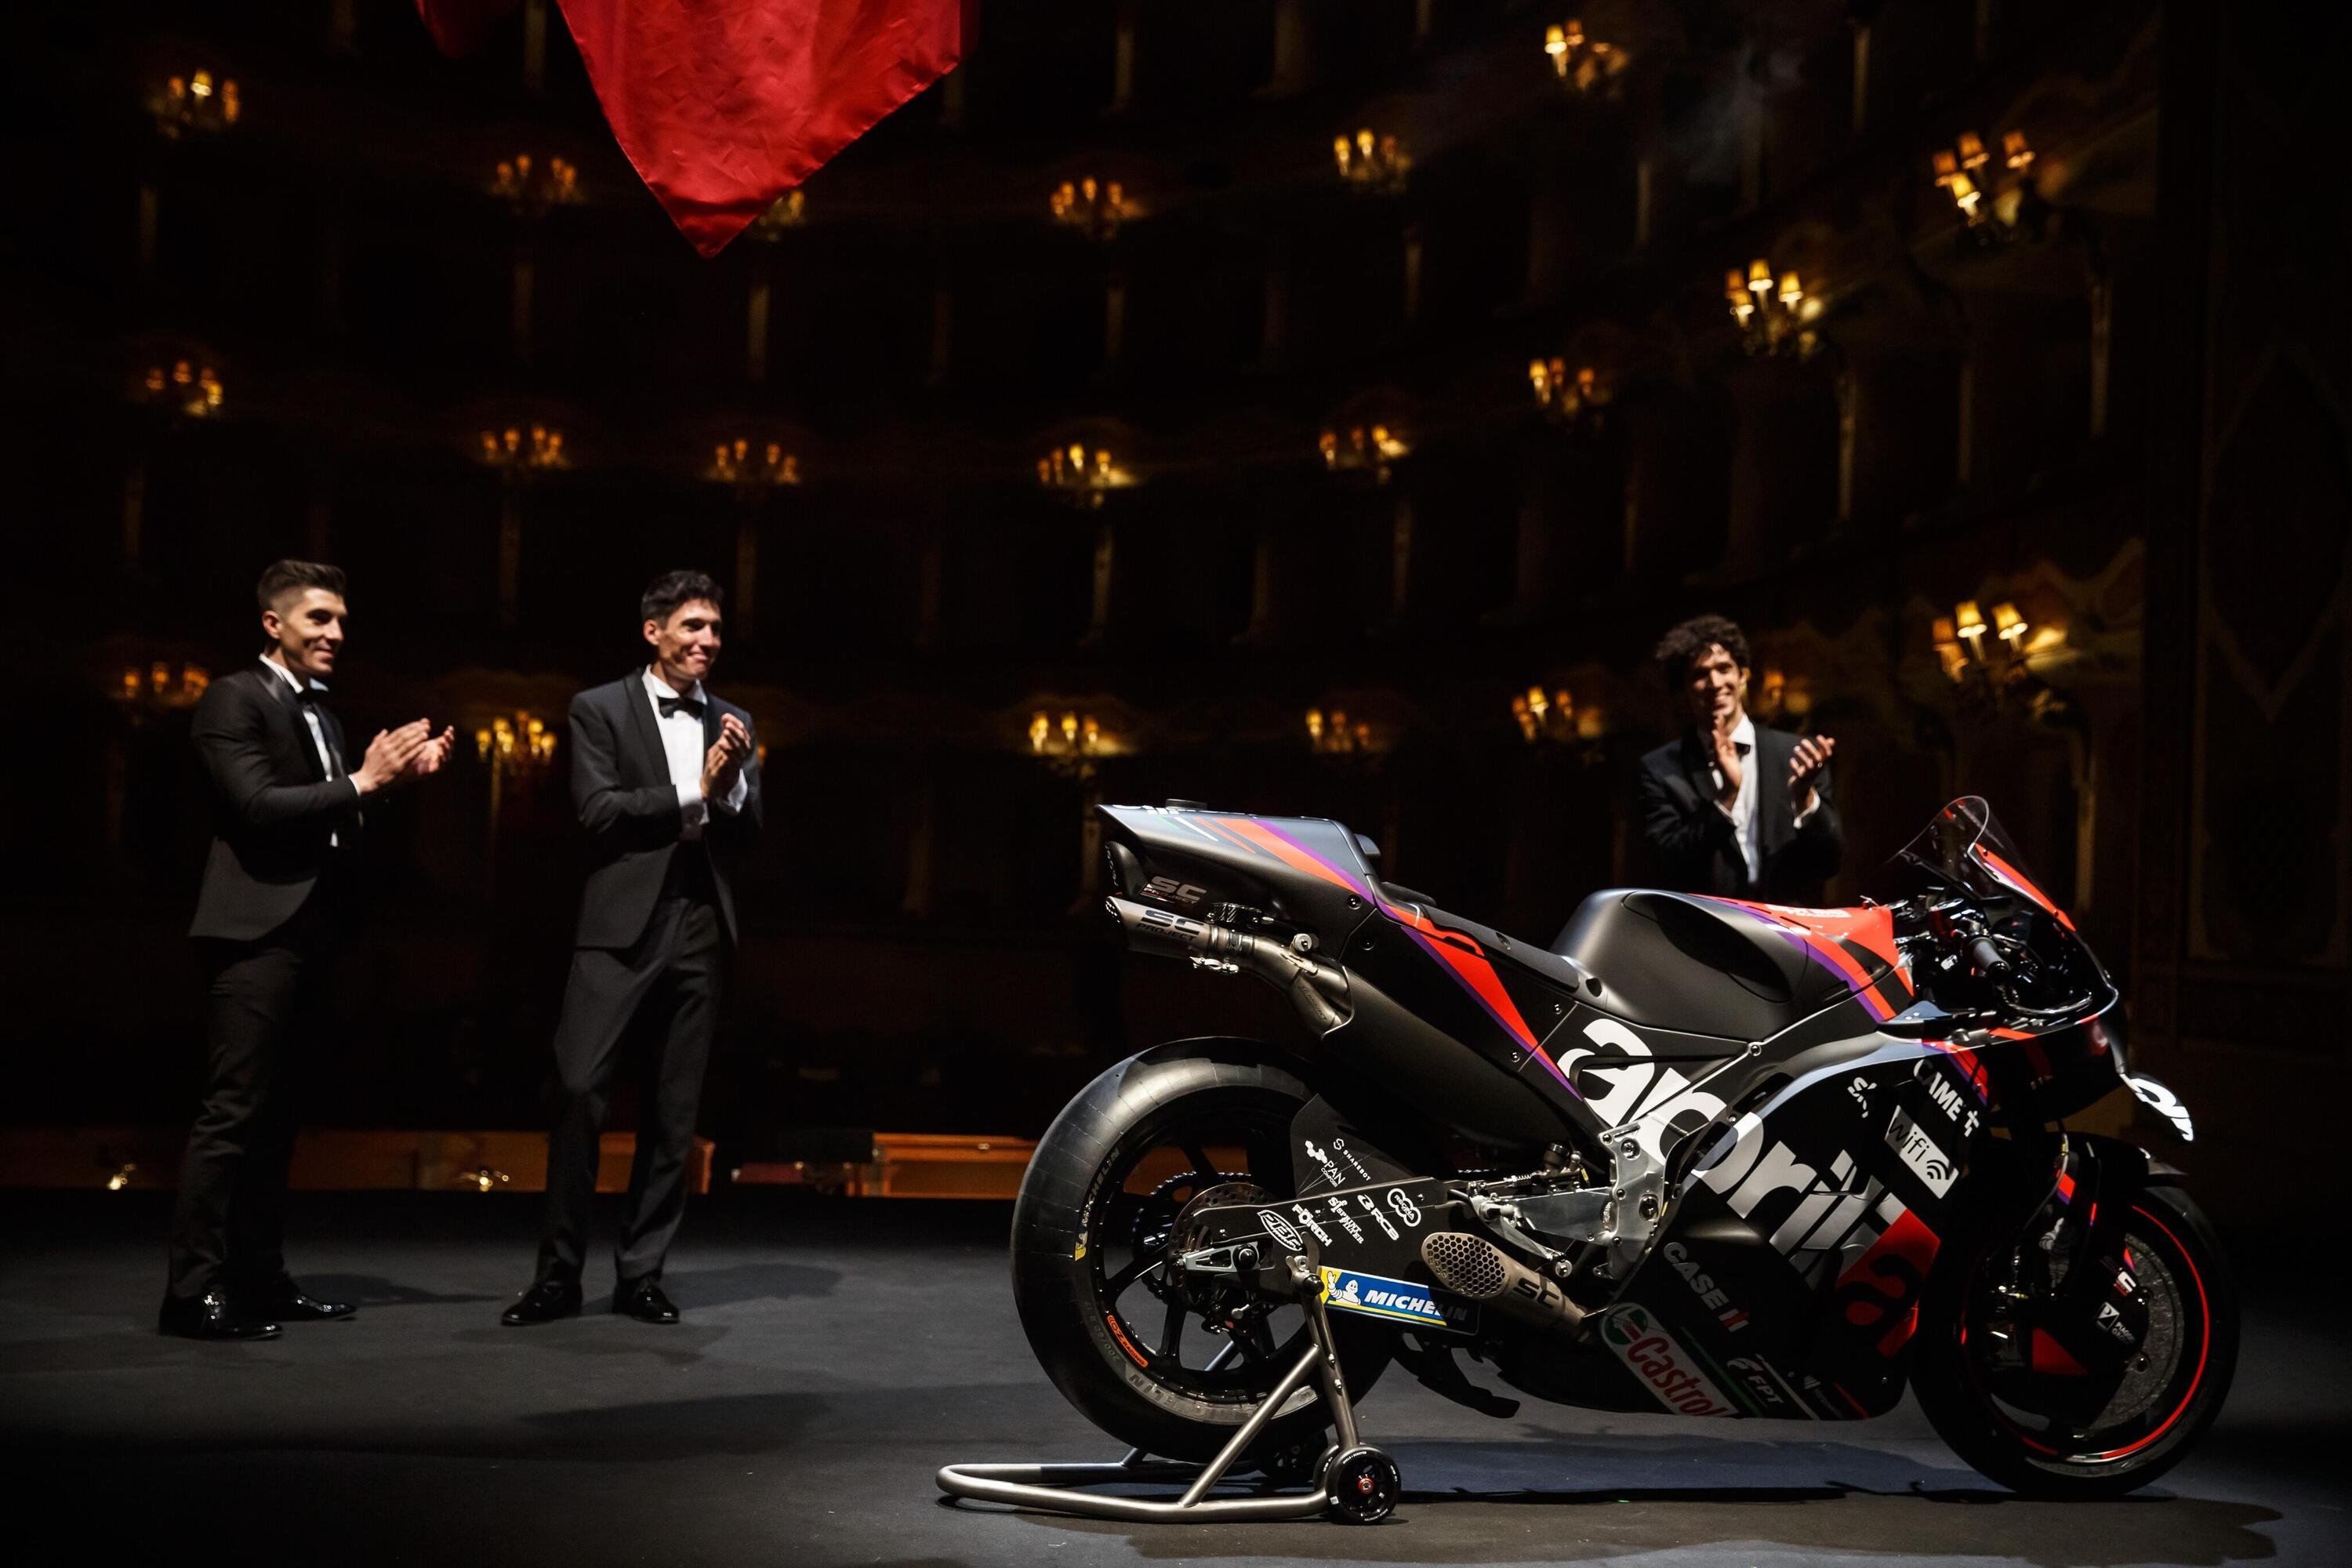 Aprilia mostra RS-GP da MotoGP 2022 em trajes de gala